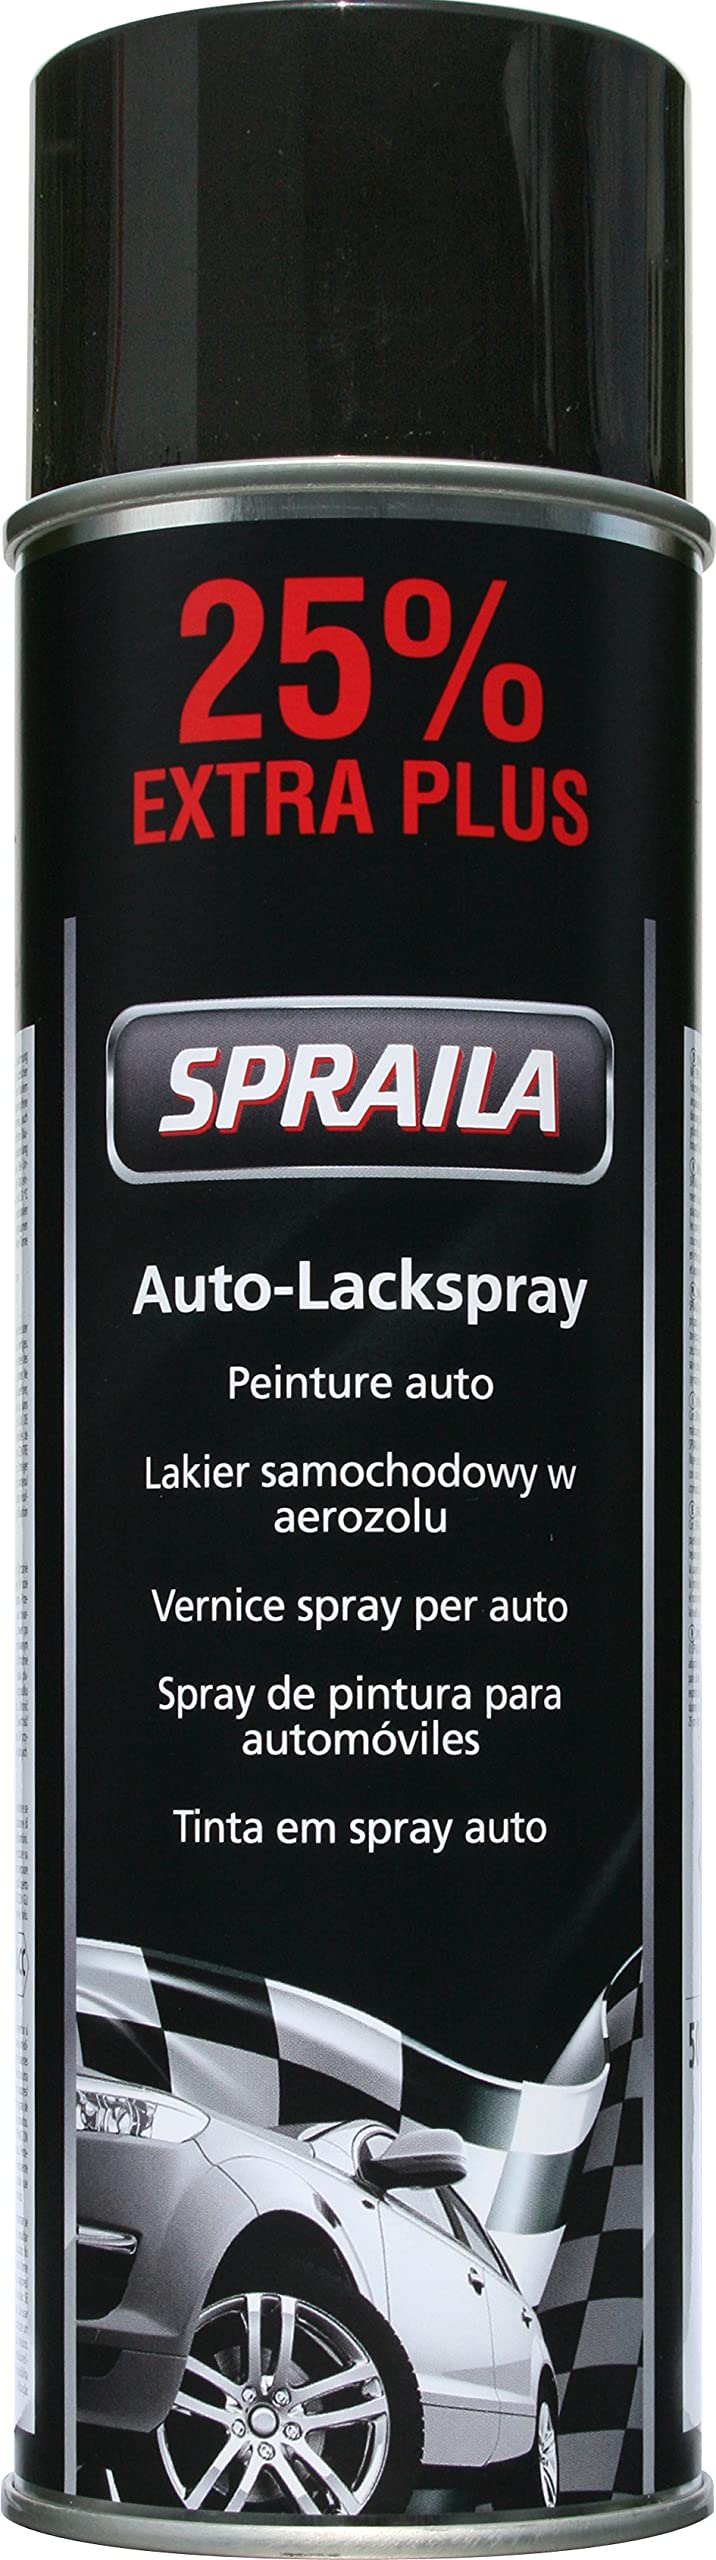 Spraila AutoK Lackspray, 500ml, schwarz, glänzend - schnell trocknend von Spraila